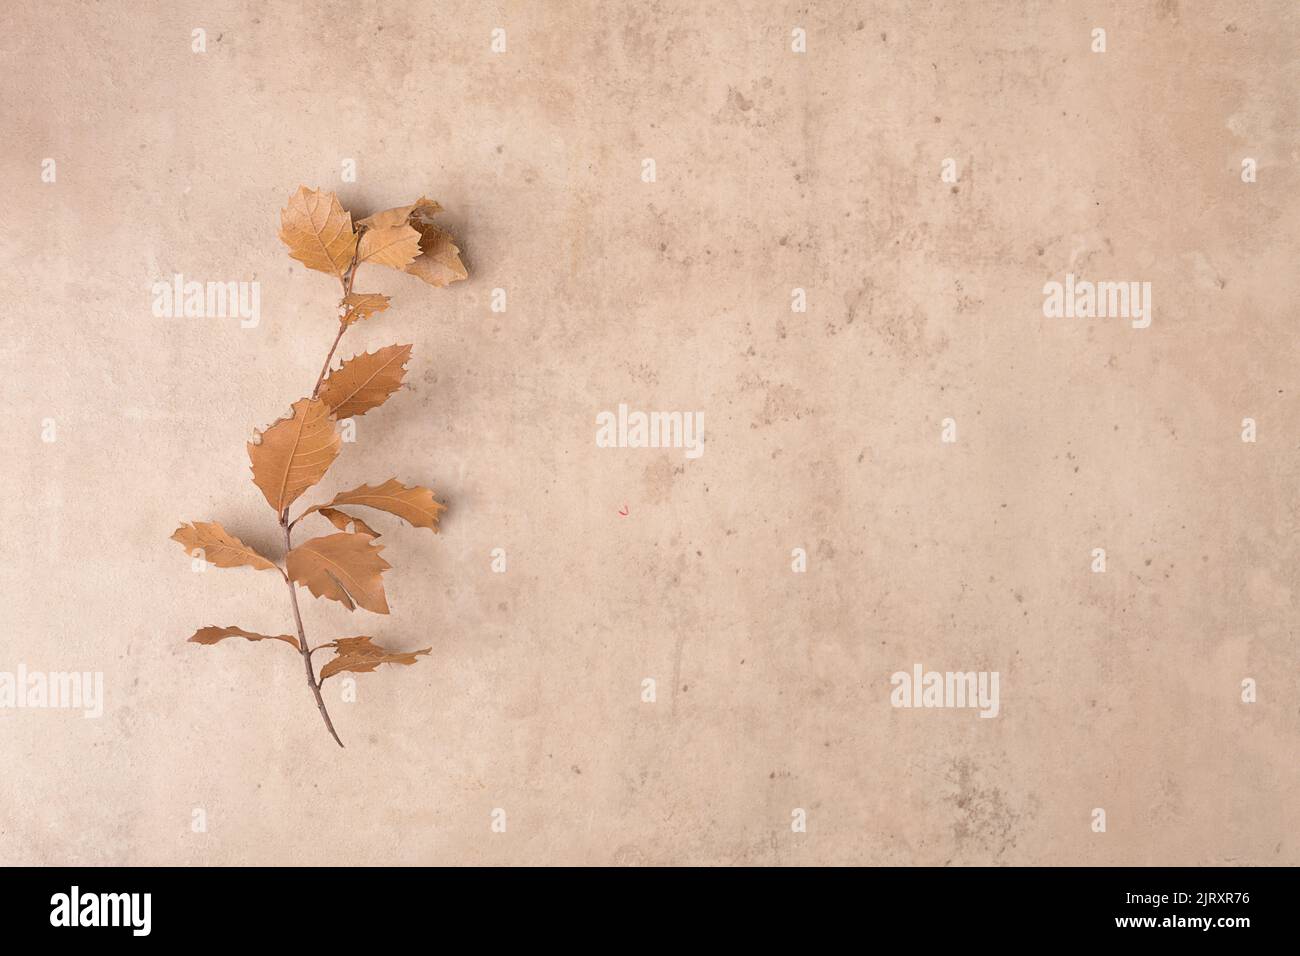 Cornice bordata da foglie asciutte cadute sul moderno sfondo in terracotta bieg. Thanksgiving sfondo autunnale, vista dall'alto, piatto Foto Stock